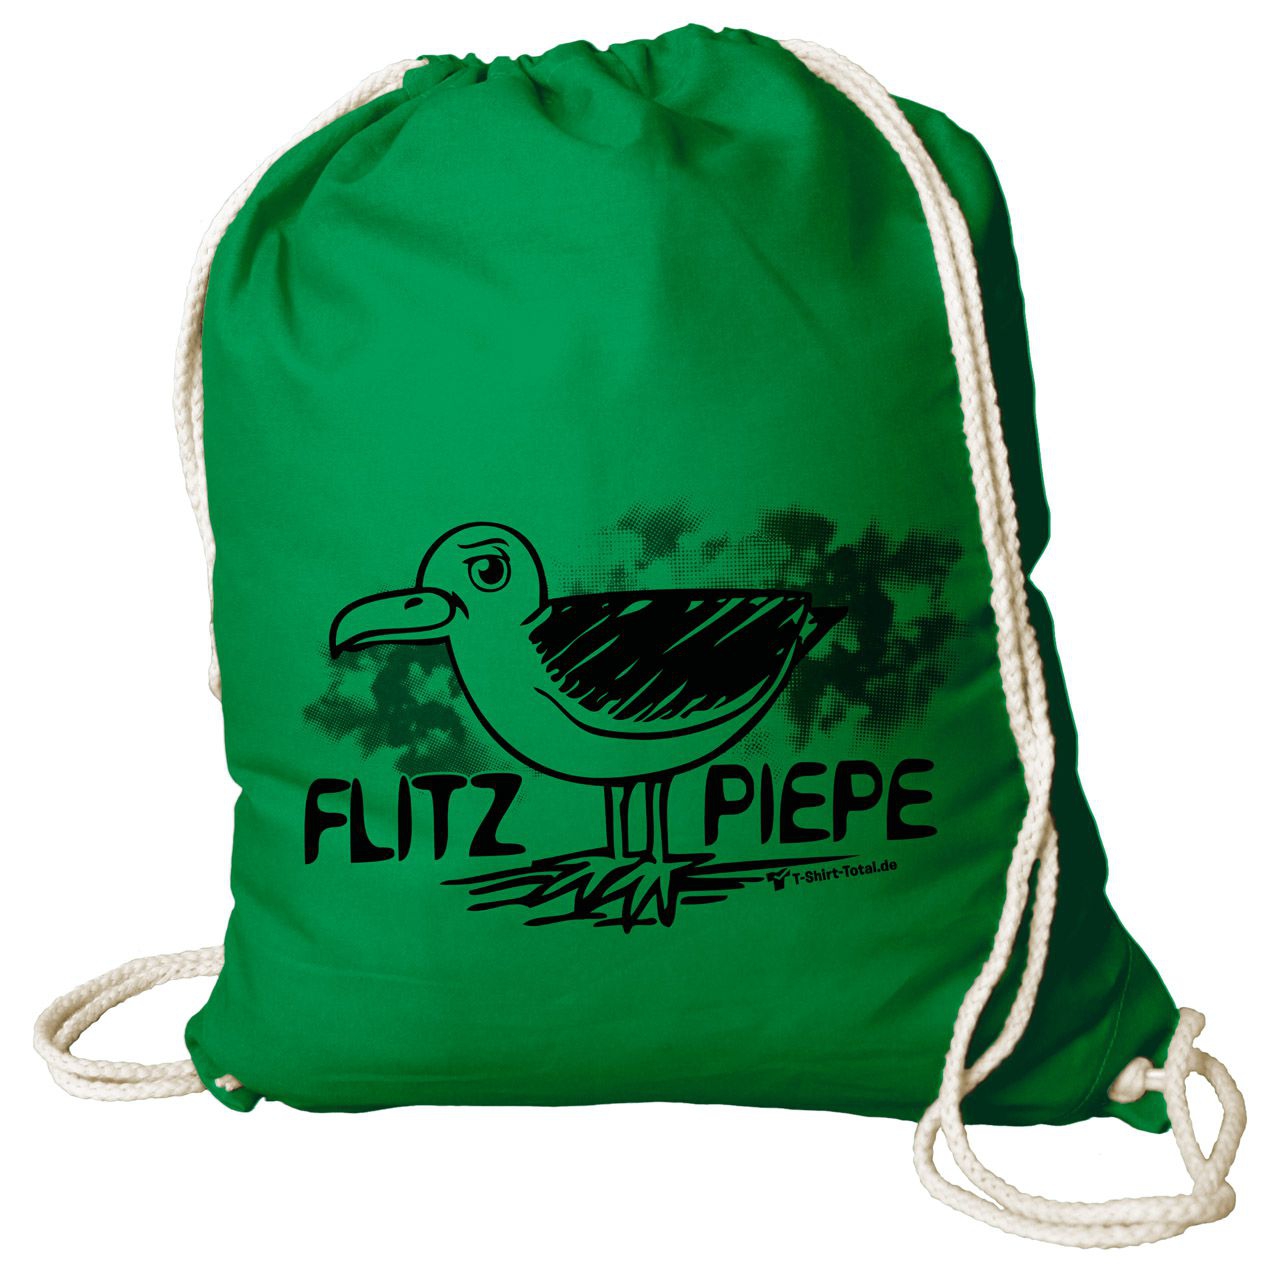 Flitzpiepe Rucksack Beutel grün